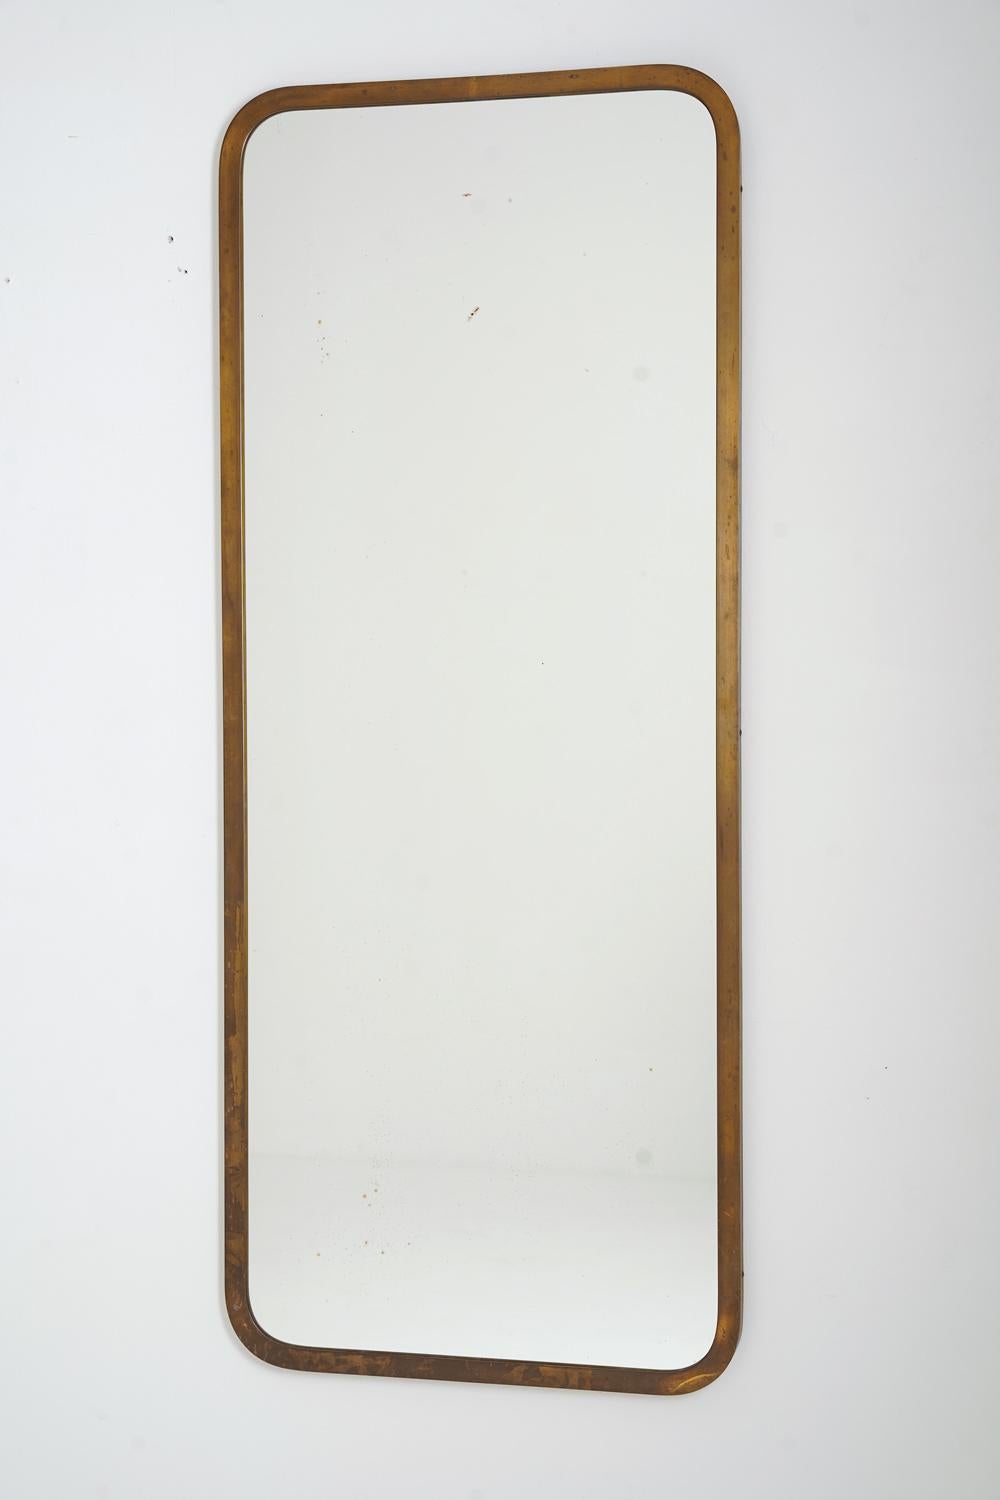 Magnifique miroir moderniste produit par Nordiska Kompaniet (NK), vers 1950.
Le design est simple et exprime une élégance discrète, typique de l'ère du design moderne suédois.

Condit : Très bon état avec une patine parfaite sur le laiton. Signes de